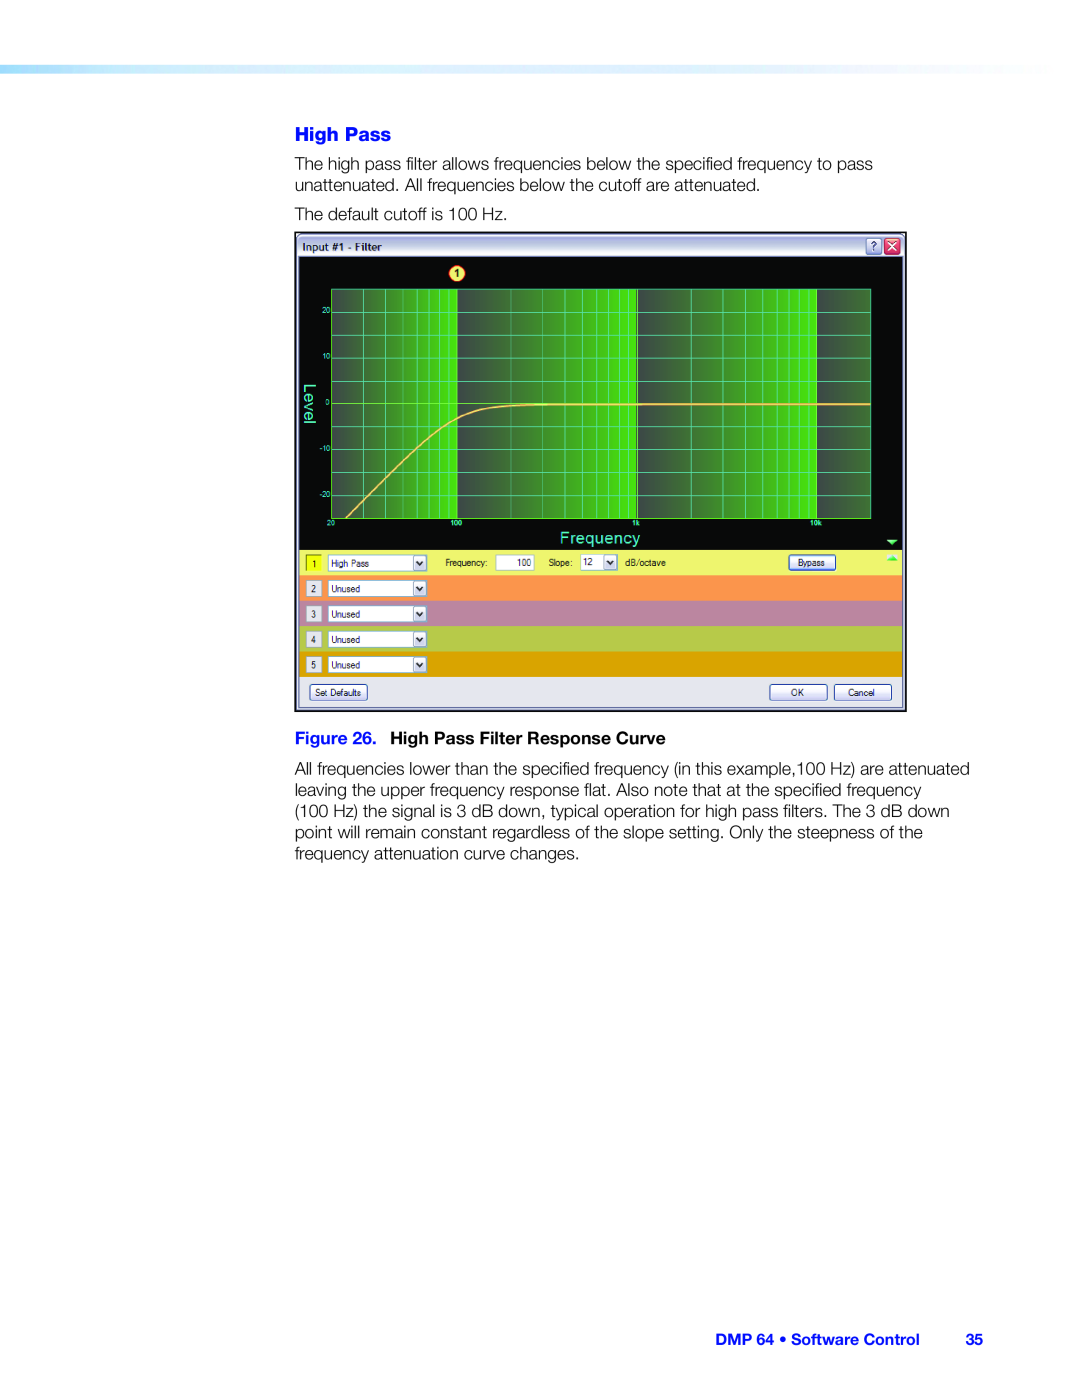 Extron electronic DMP 64 manual High Pass Filter Response Curve 